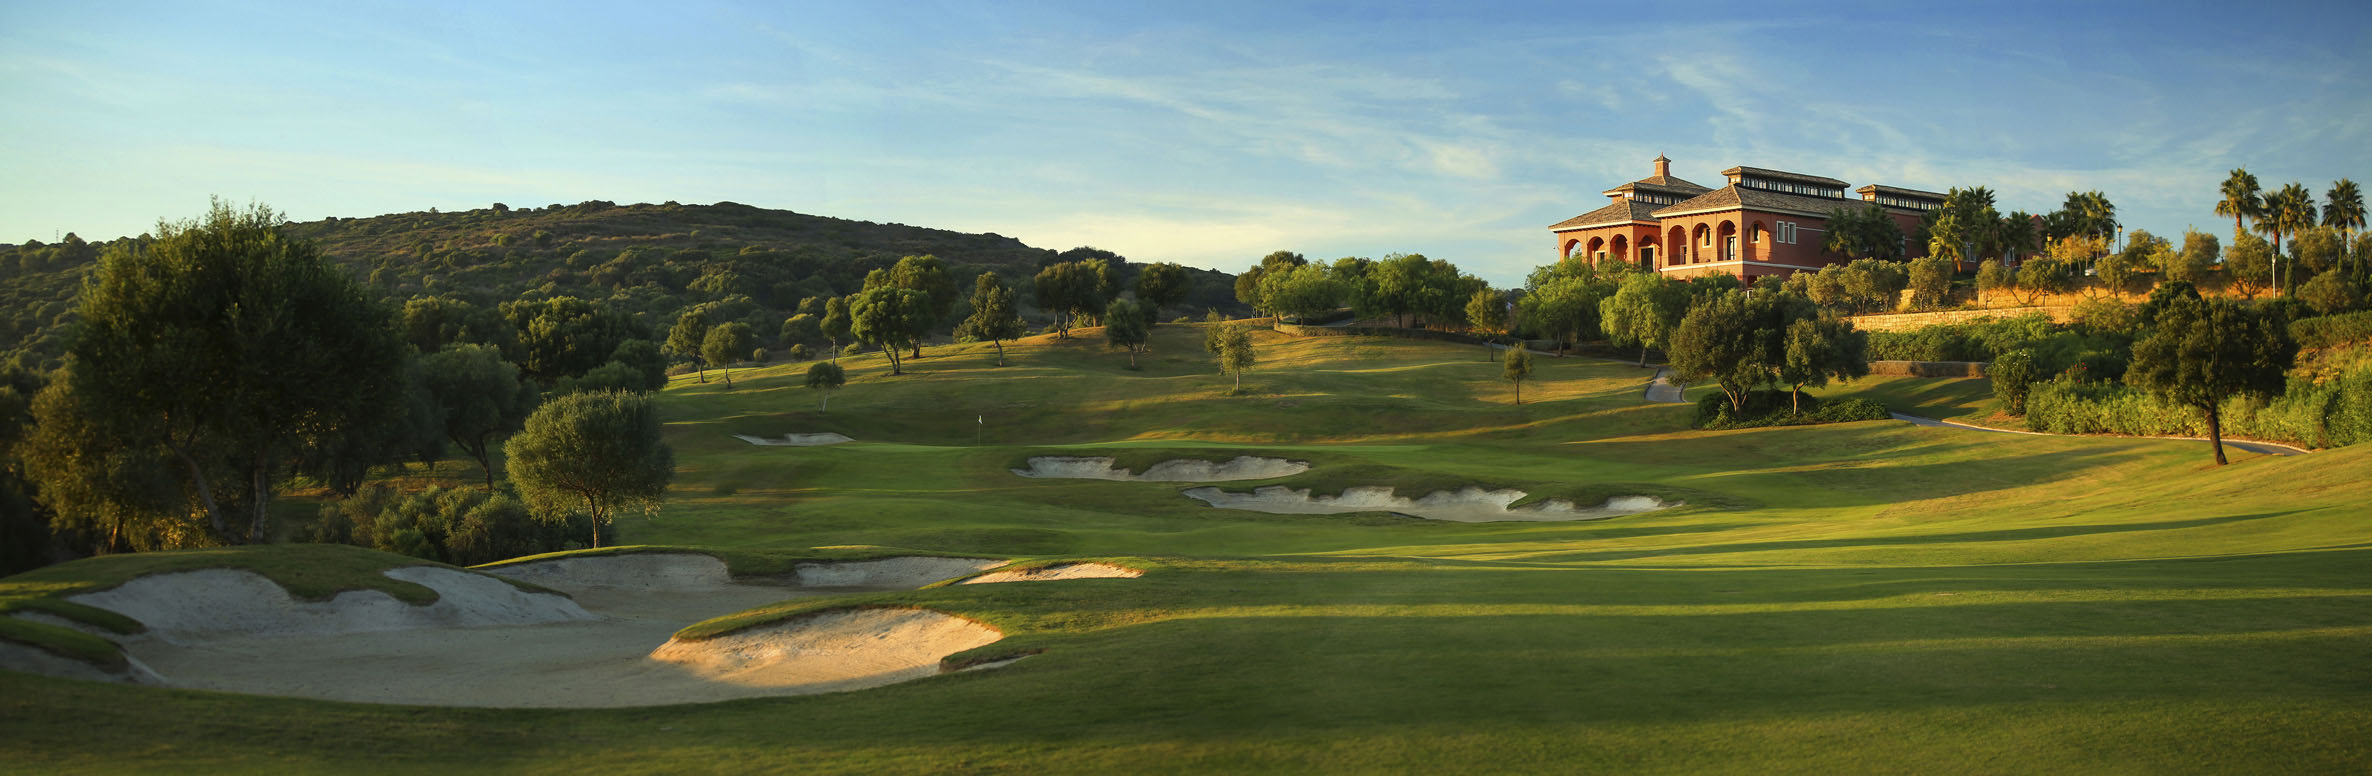 Golf Course Image - La Reserva Cardales Golf Club No. 18